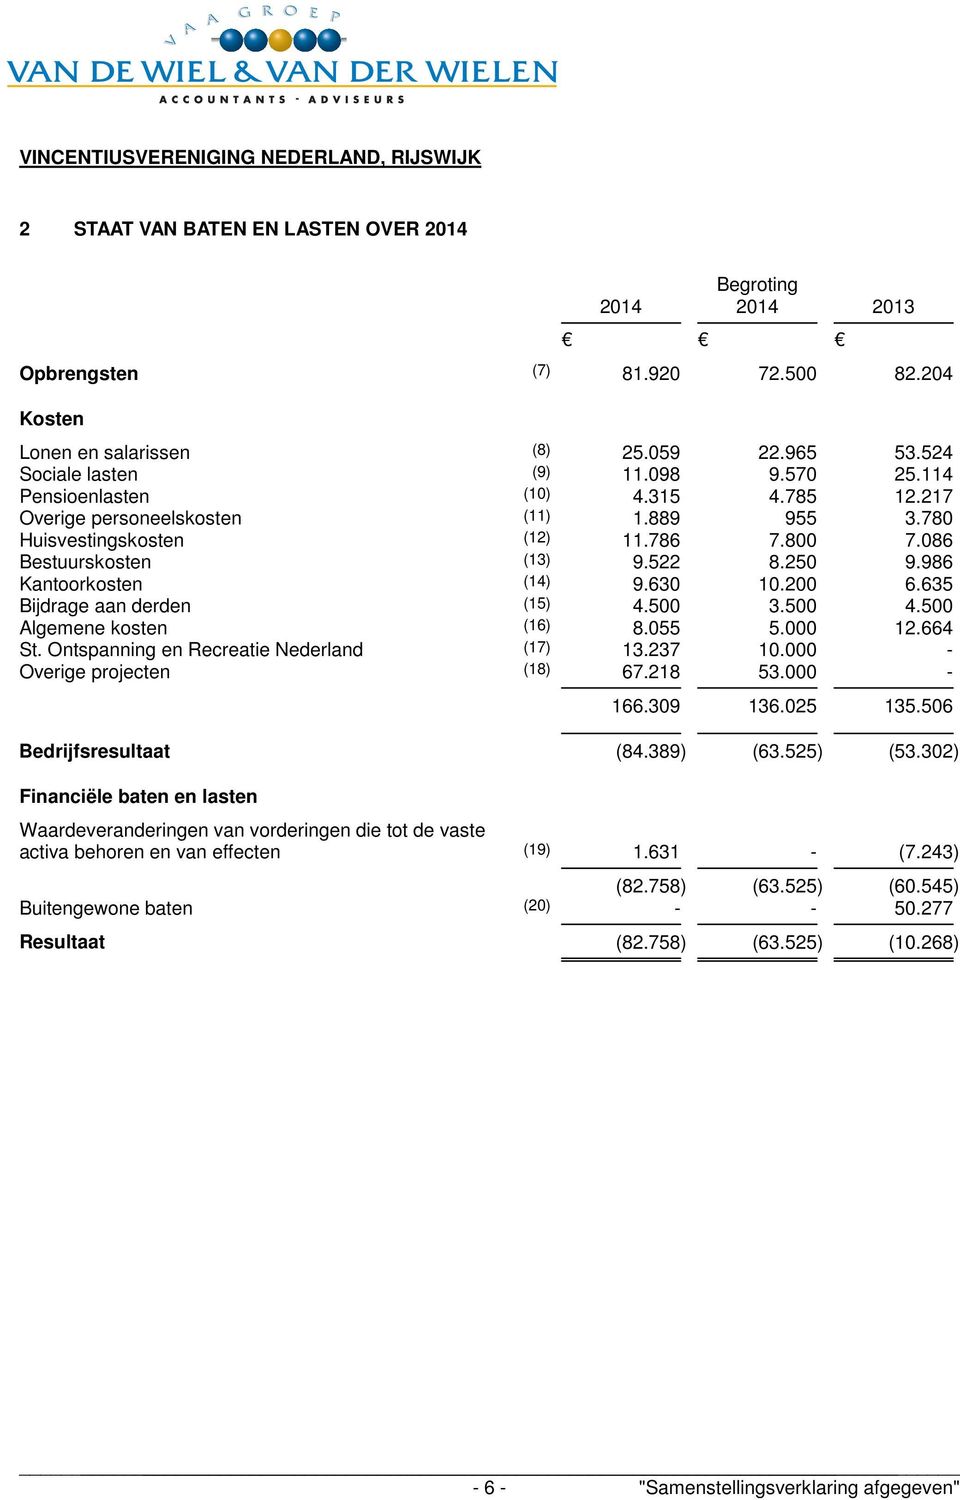 200 6.635 Bijdrage aan derden (15) 4.500 3.500 4.500 Algemene kosten (16) 8.055 5.000 12.664 St. Ontspanning en Recreatie Nederland (17) 13.237 10.000 - Overige projecten (18) 67.218 53.000-2013 166.